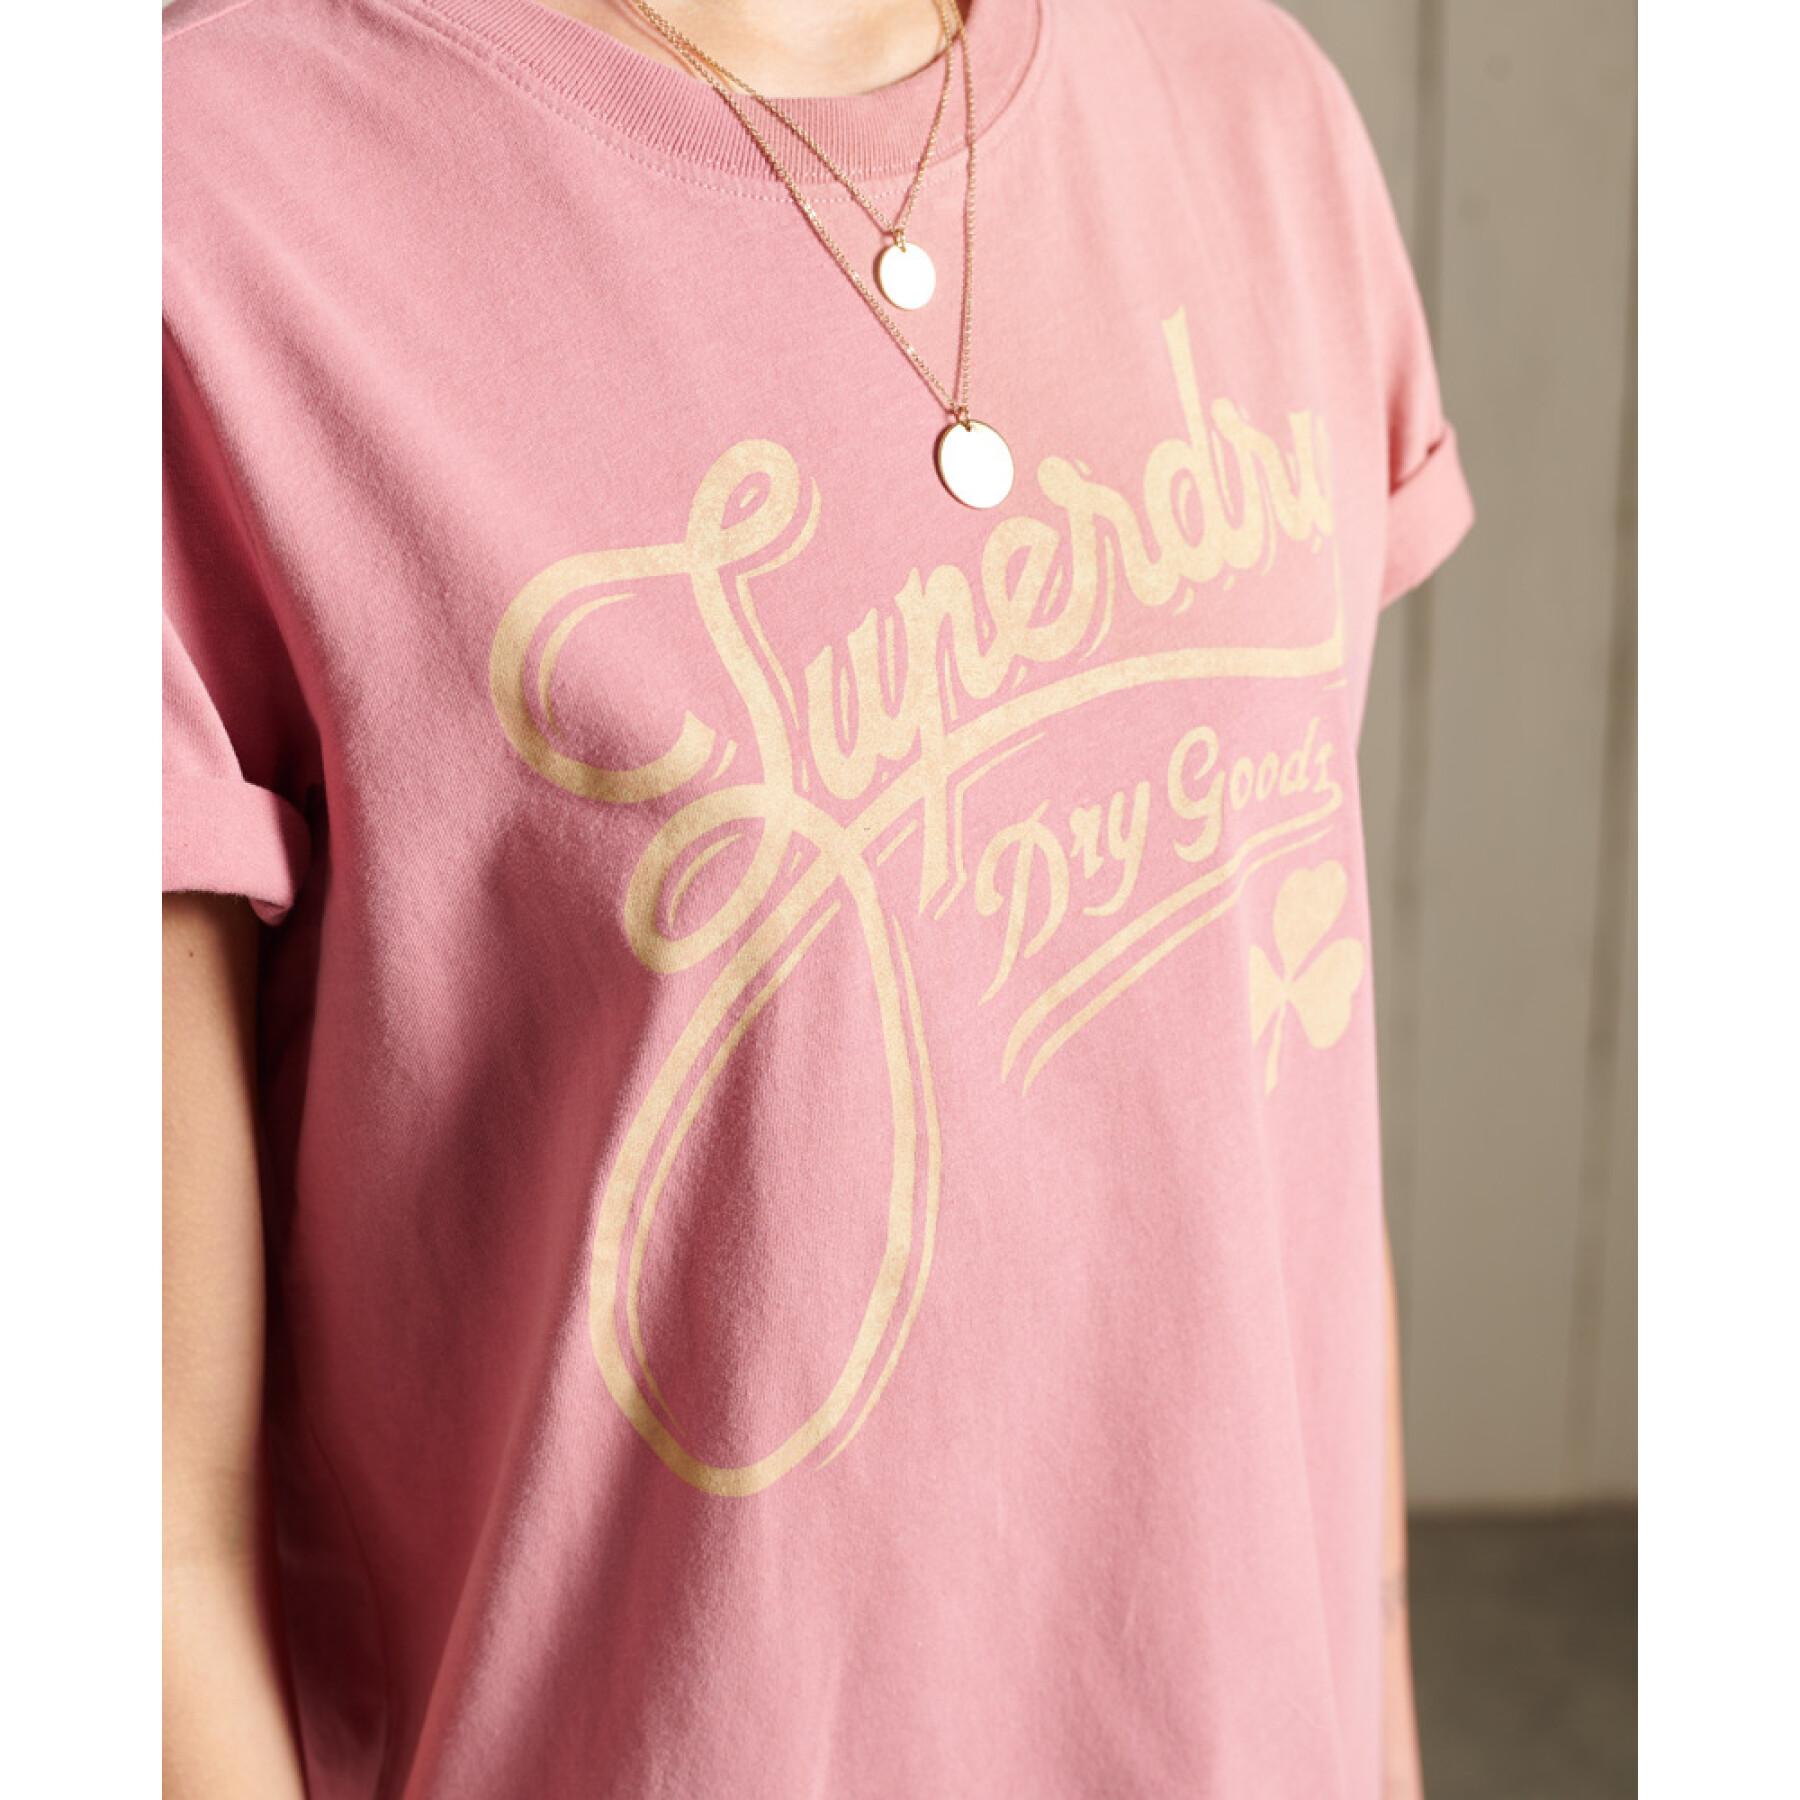 Koszulka damska Superdry Workwear